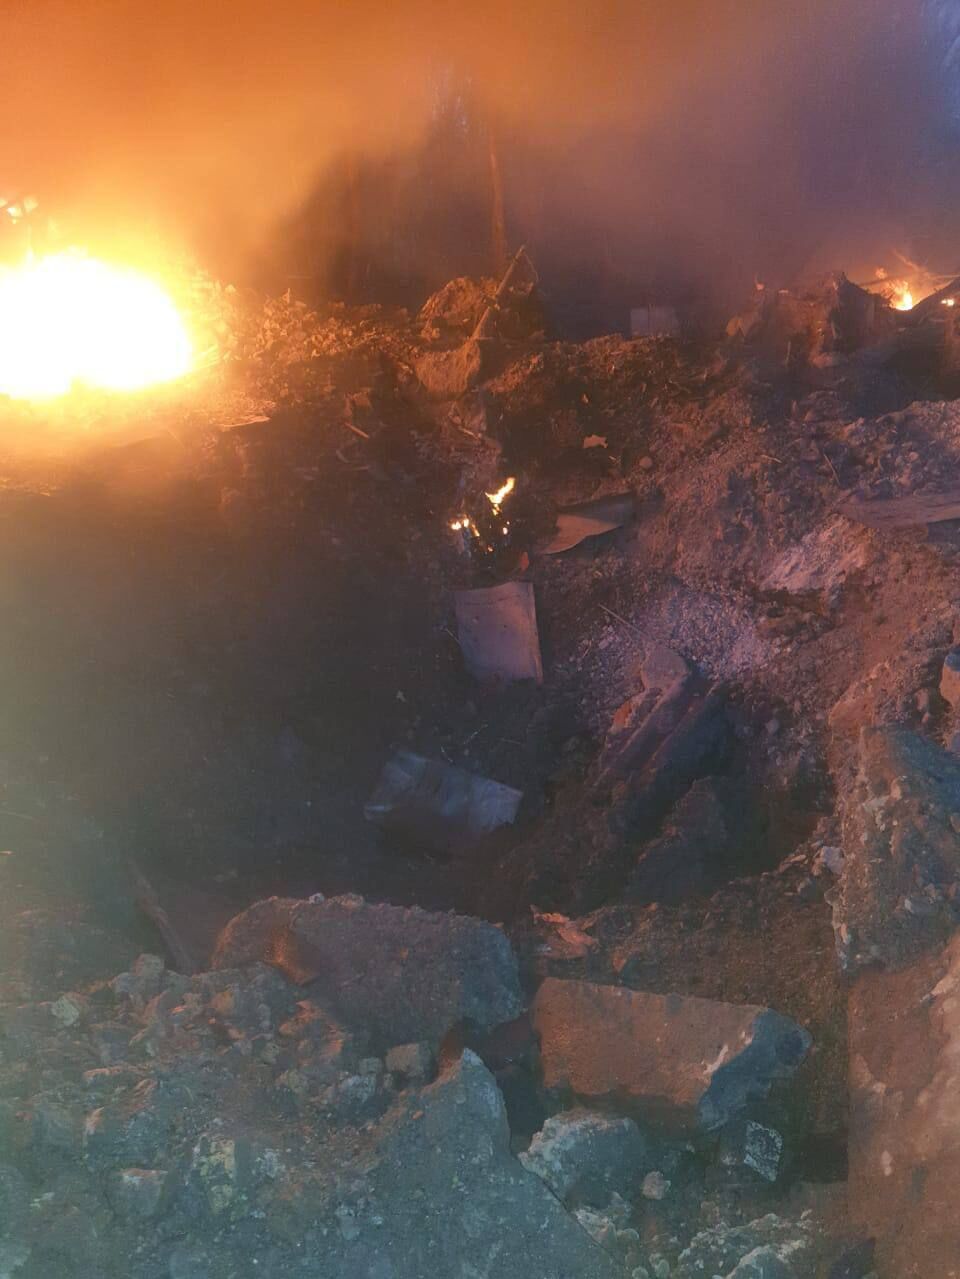 Разрушенная многоэтажка в Умани, пожары в Днепре, обломки ракеты в квартире в Украинке. Последствия ночного ракетного удара РФ. Фоторепортаж 26